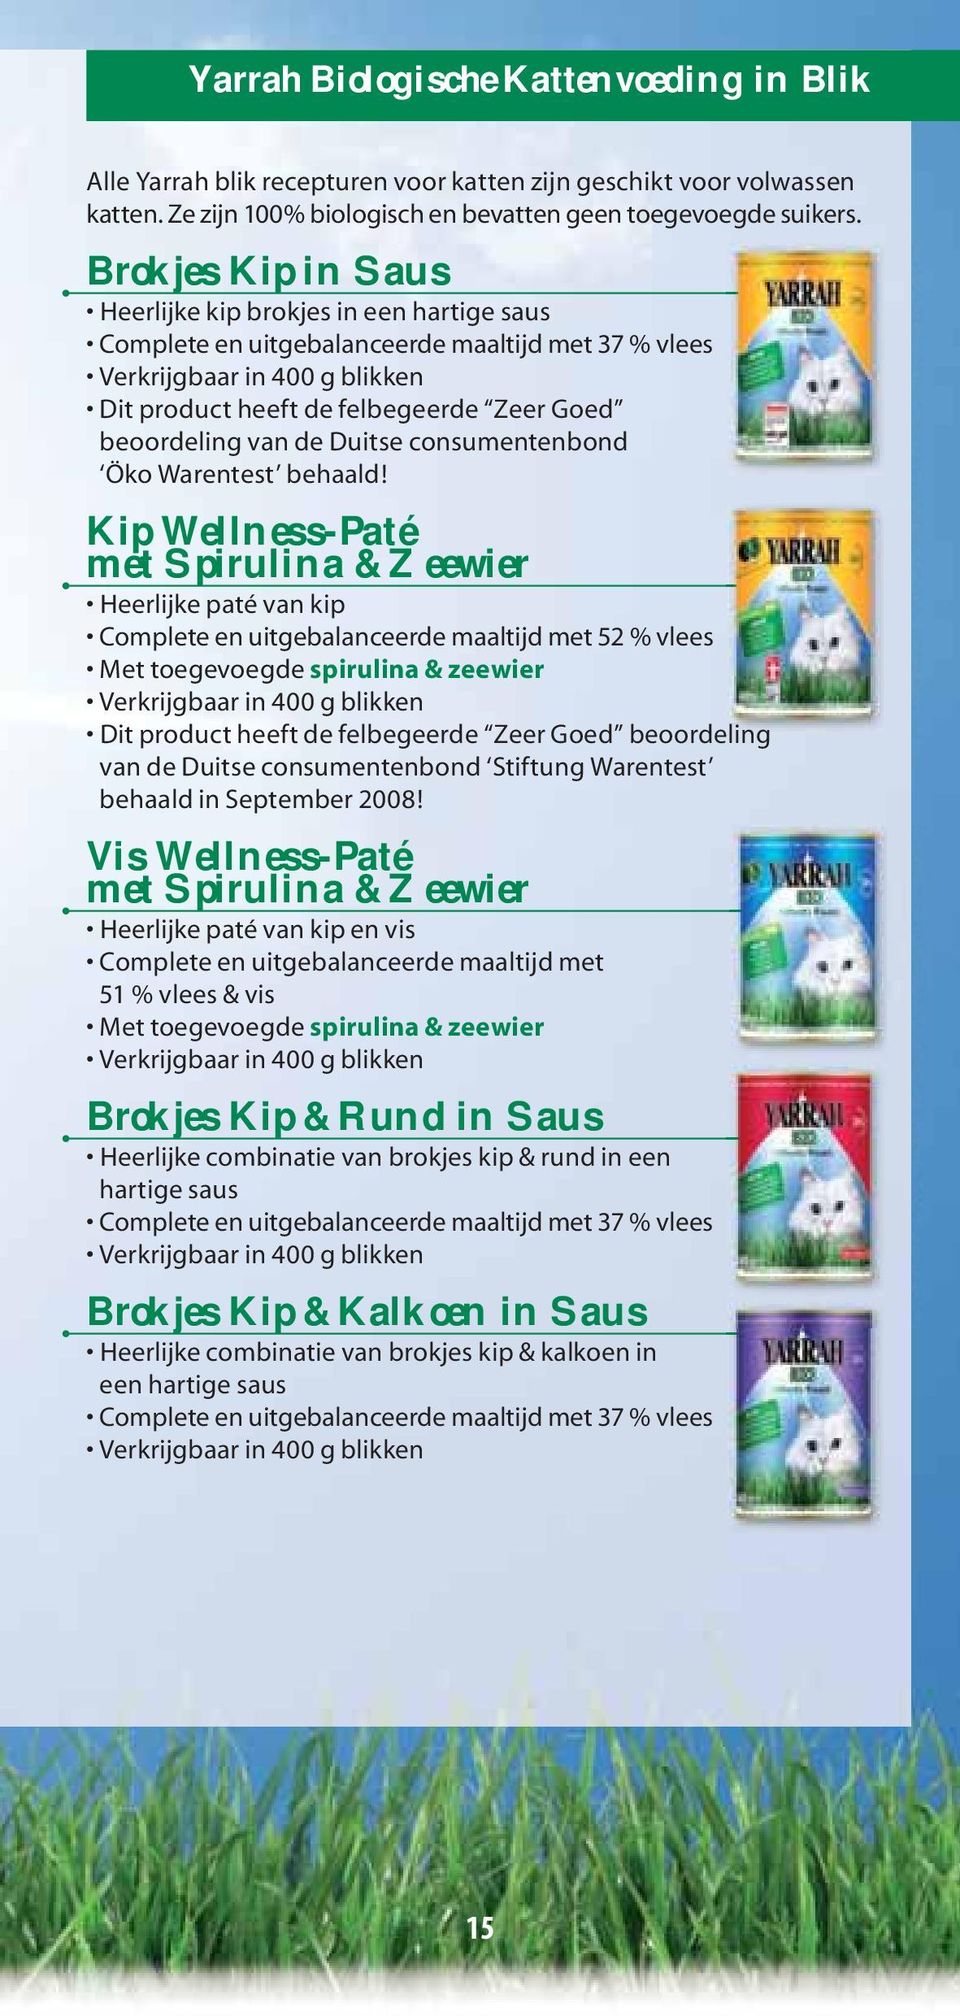 Brokjes Kip in Saus beoordeling van de Duitse consumentenbond Öko Warentest behaald!